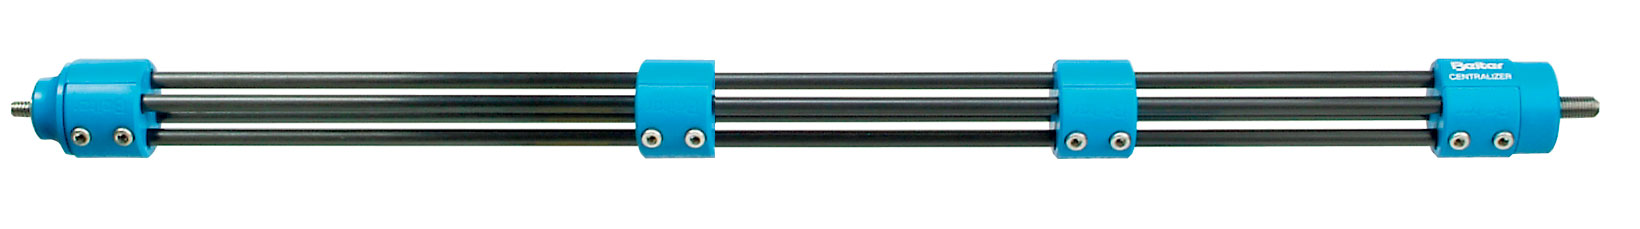 Beiter Monostabilisator, blau, mit Gewichtsadapter und 2 Tuner